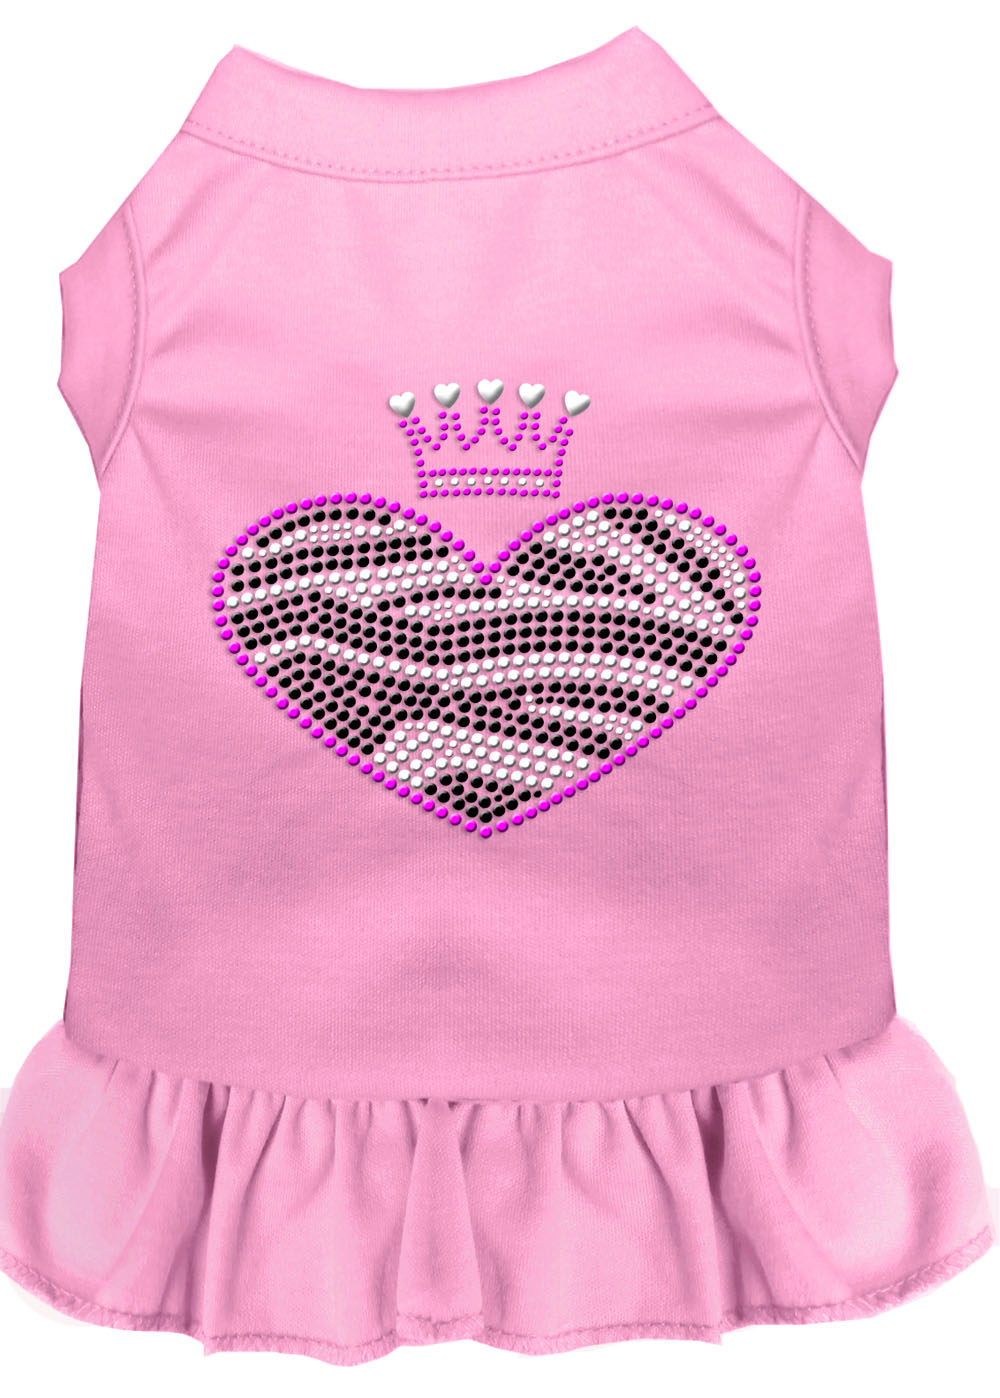 Zebra Heart Rhinestone Dress Light Pink Xxl GreatEagleInc